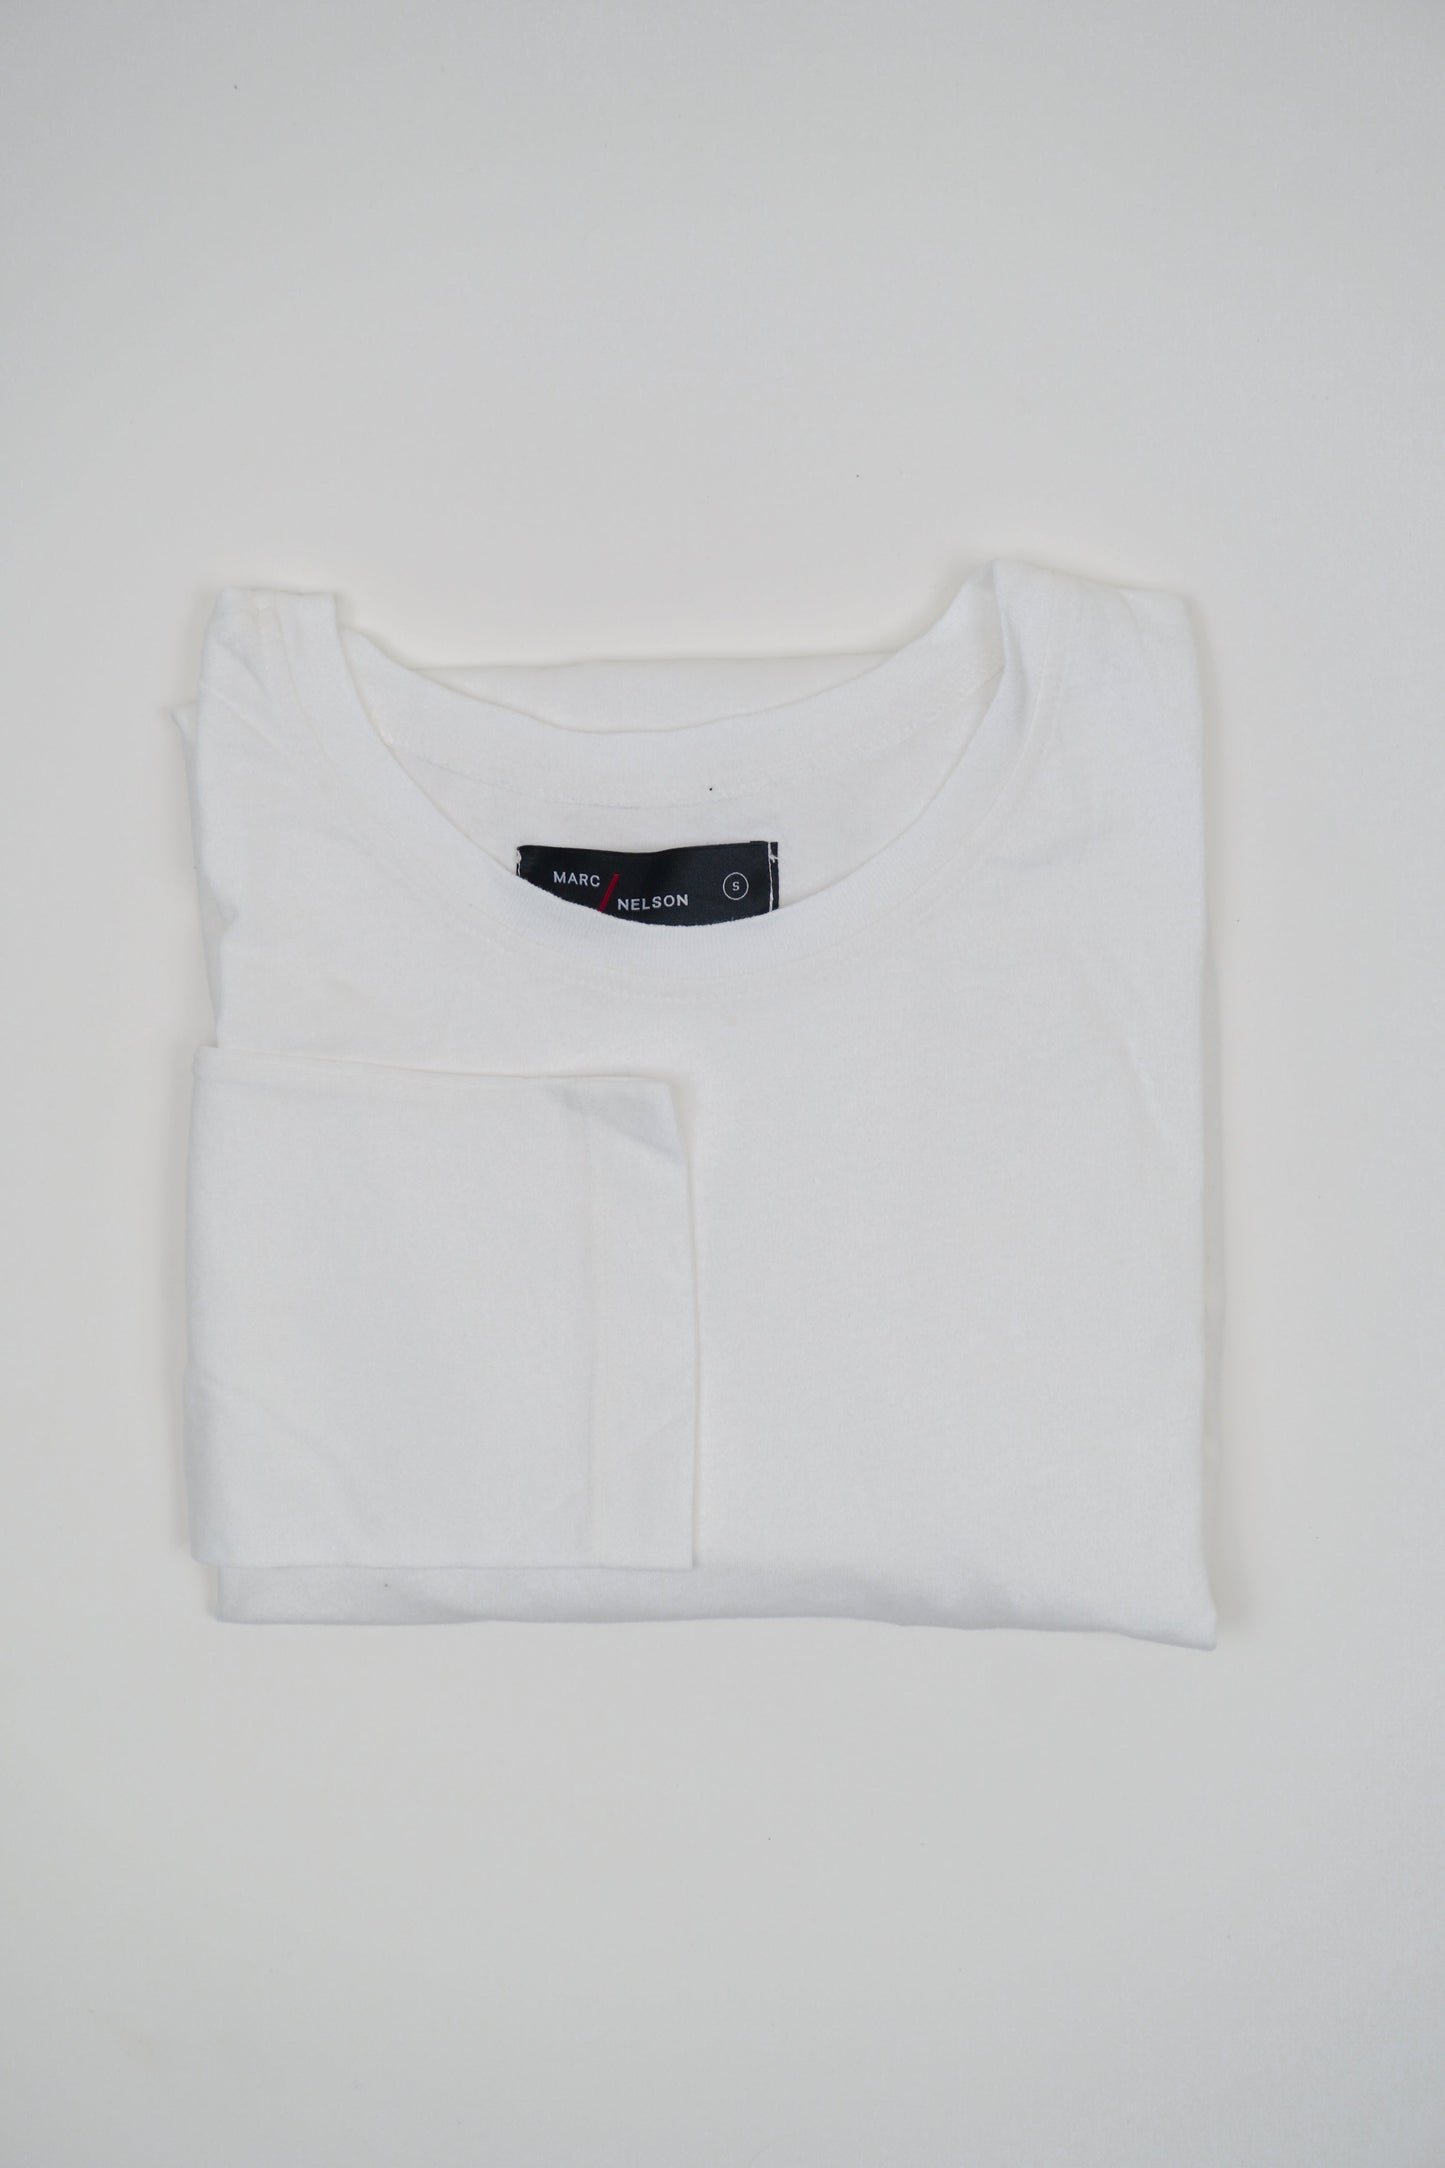 Marc Nelson men's white t-shirt, folded.